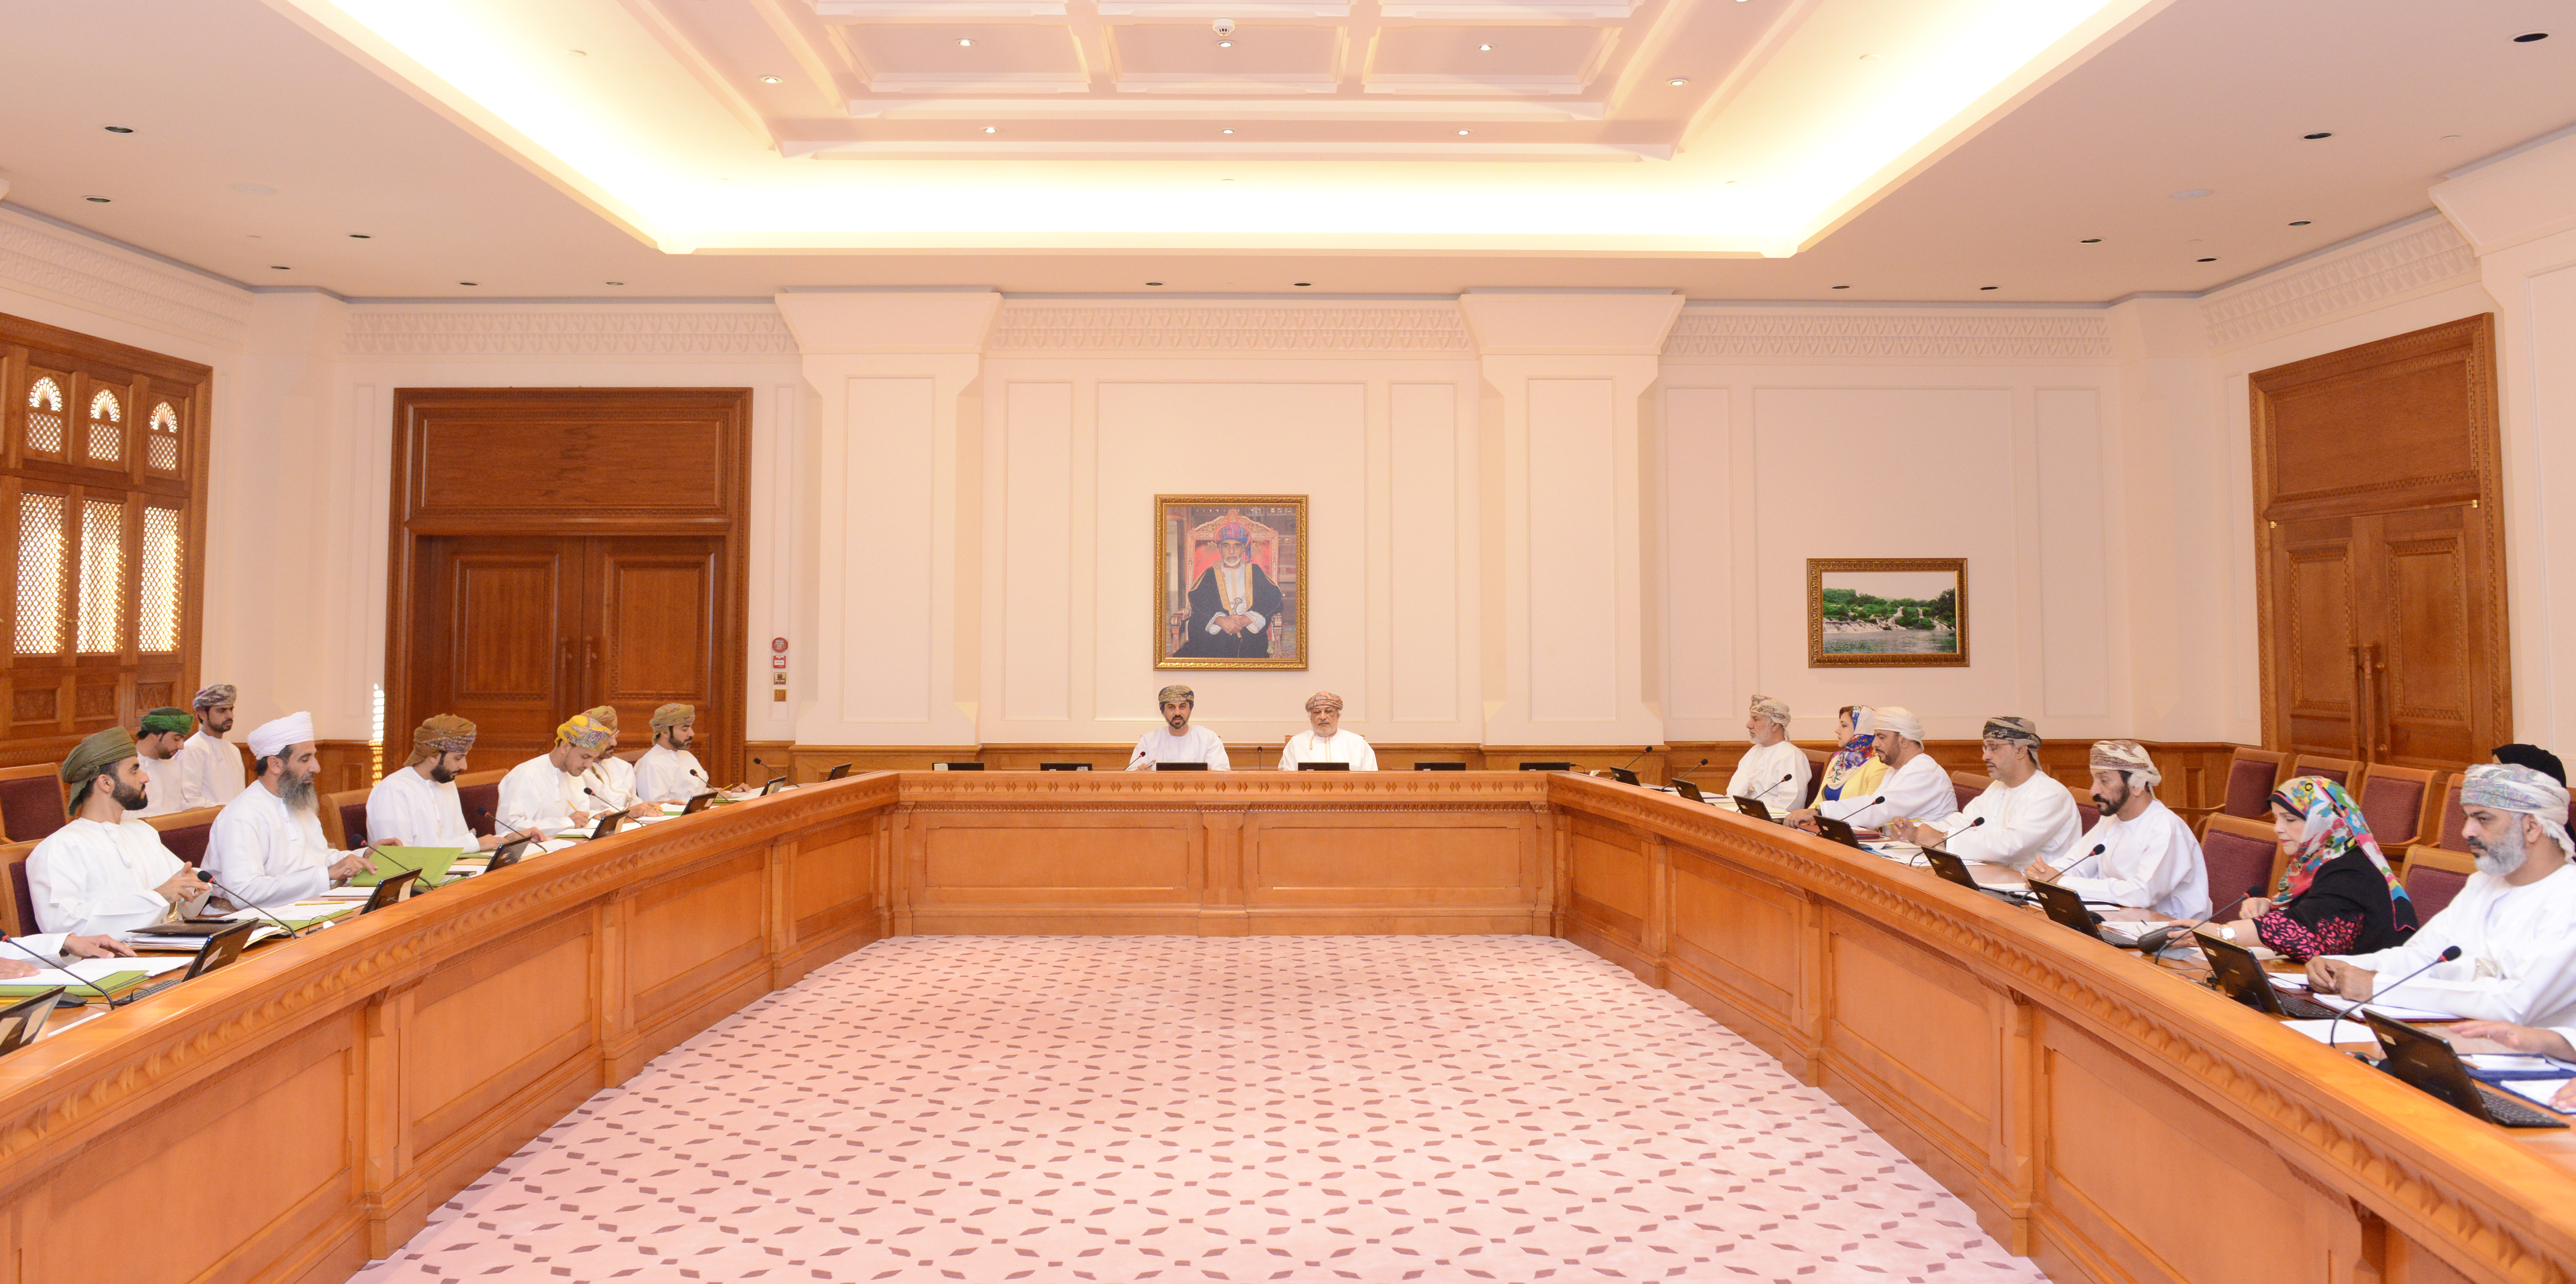 اللقاء المشترك لمكتبي الدولة والشورى يقر آلية تمثيل السلطنة في المحافل الدولية والإقليمية